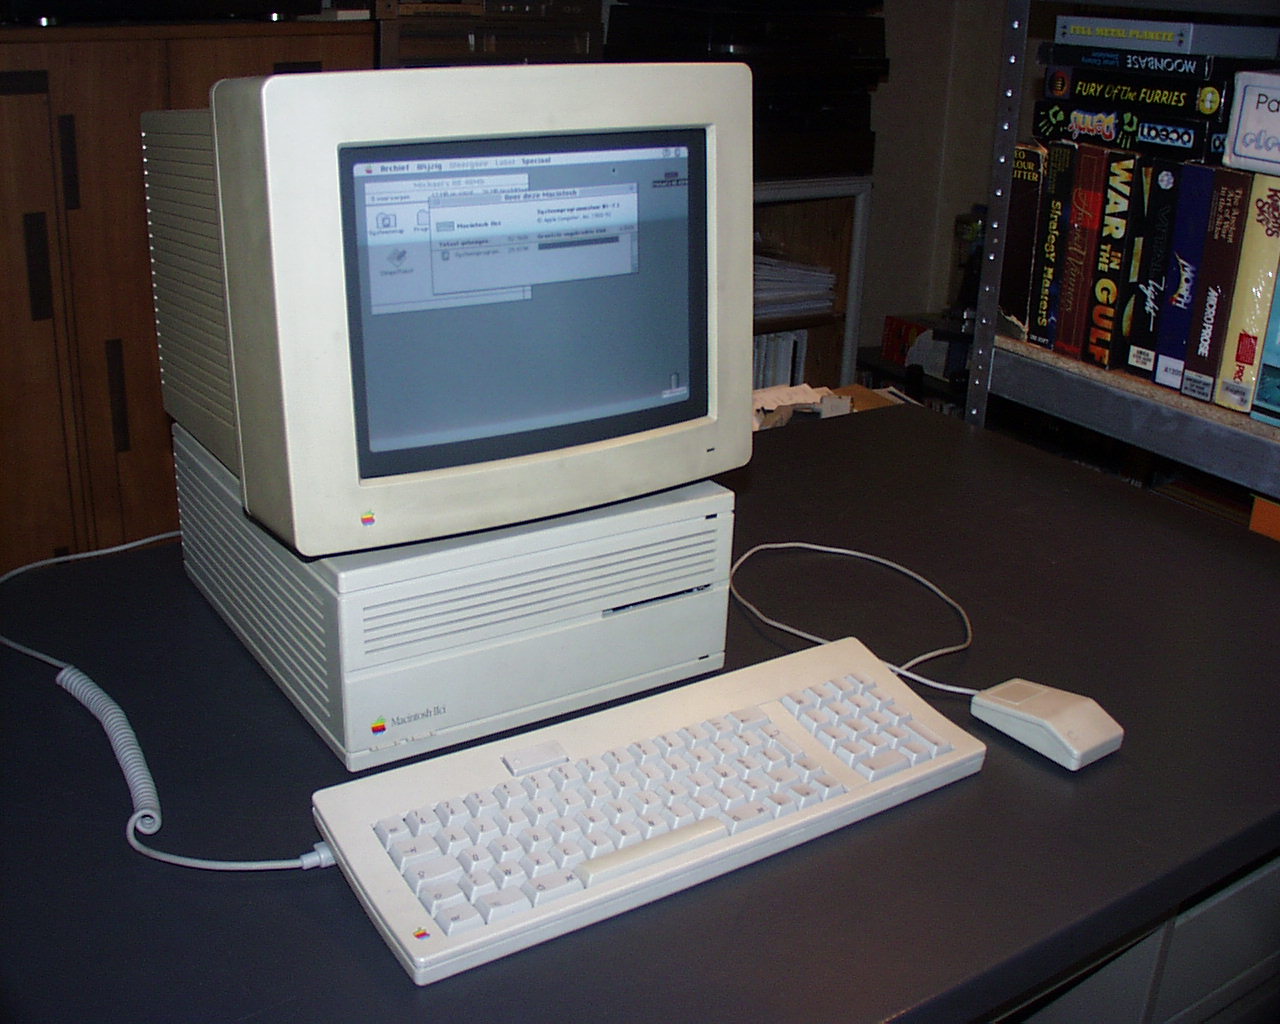 Macintosh IIci